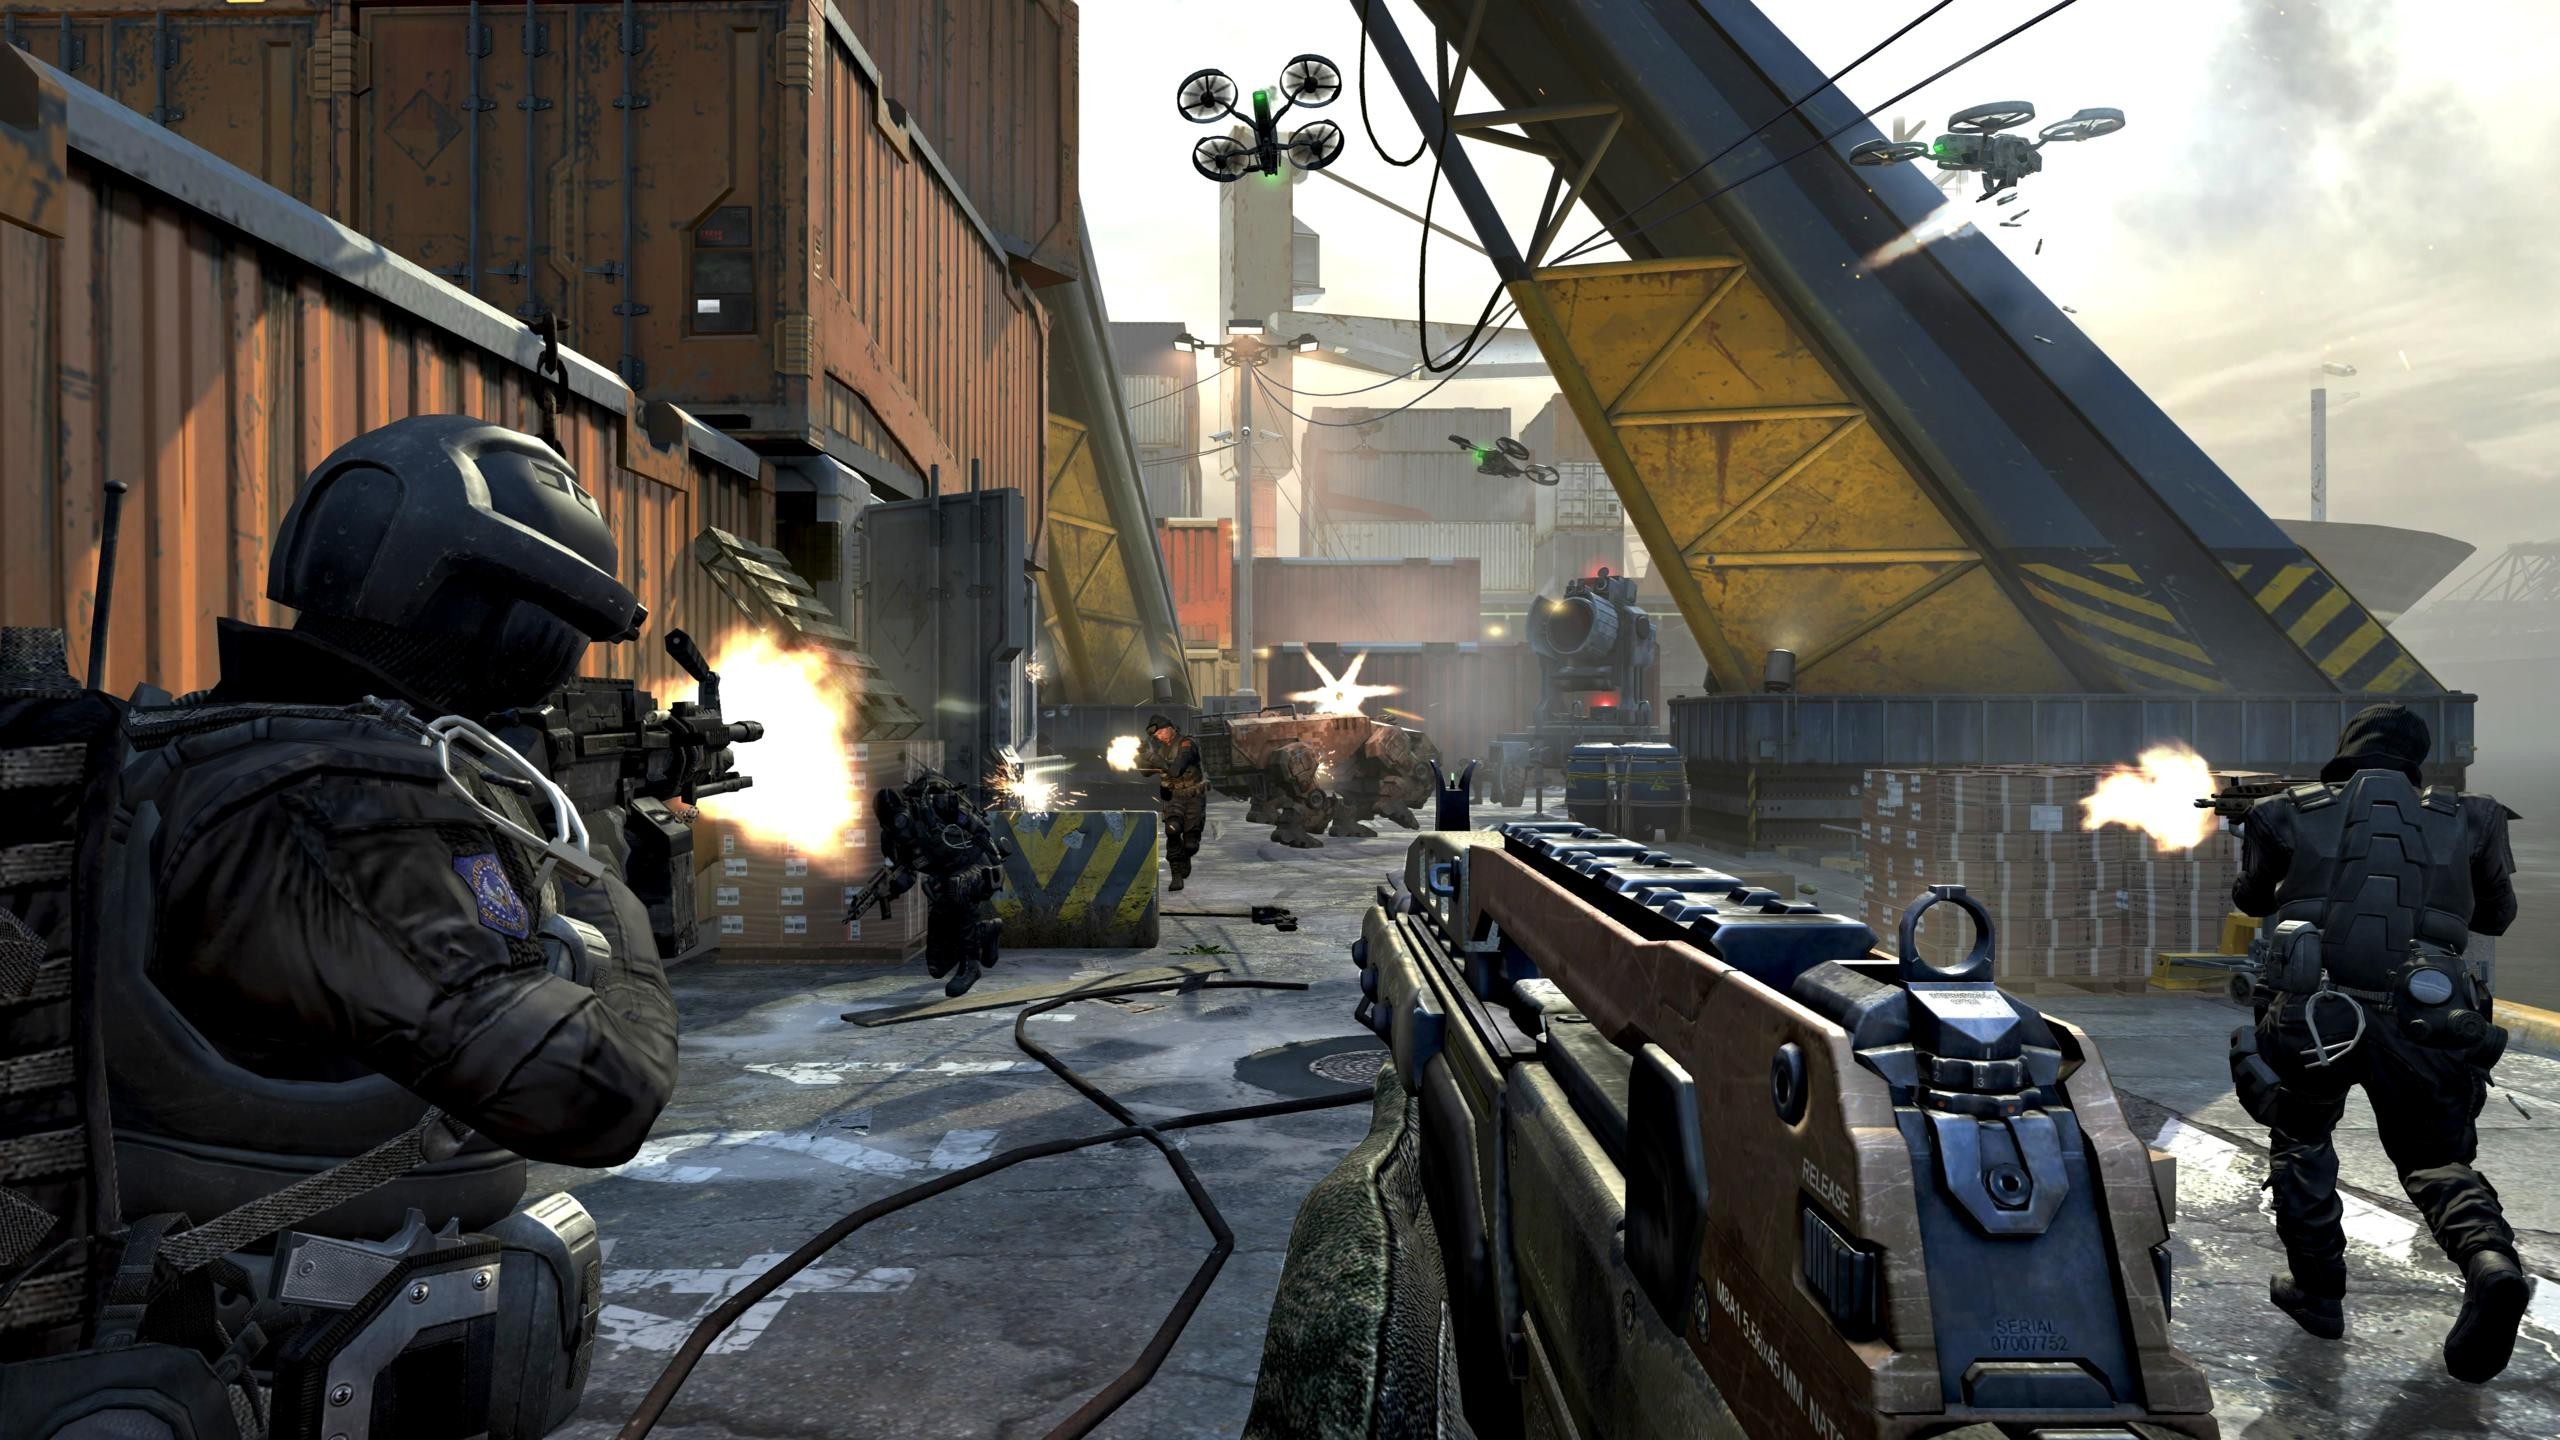 Descarga gratuita de fondo de pantalla para móvil de Call Of Duty: Black Ops Ii, Call Of Duty, Videojuego.